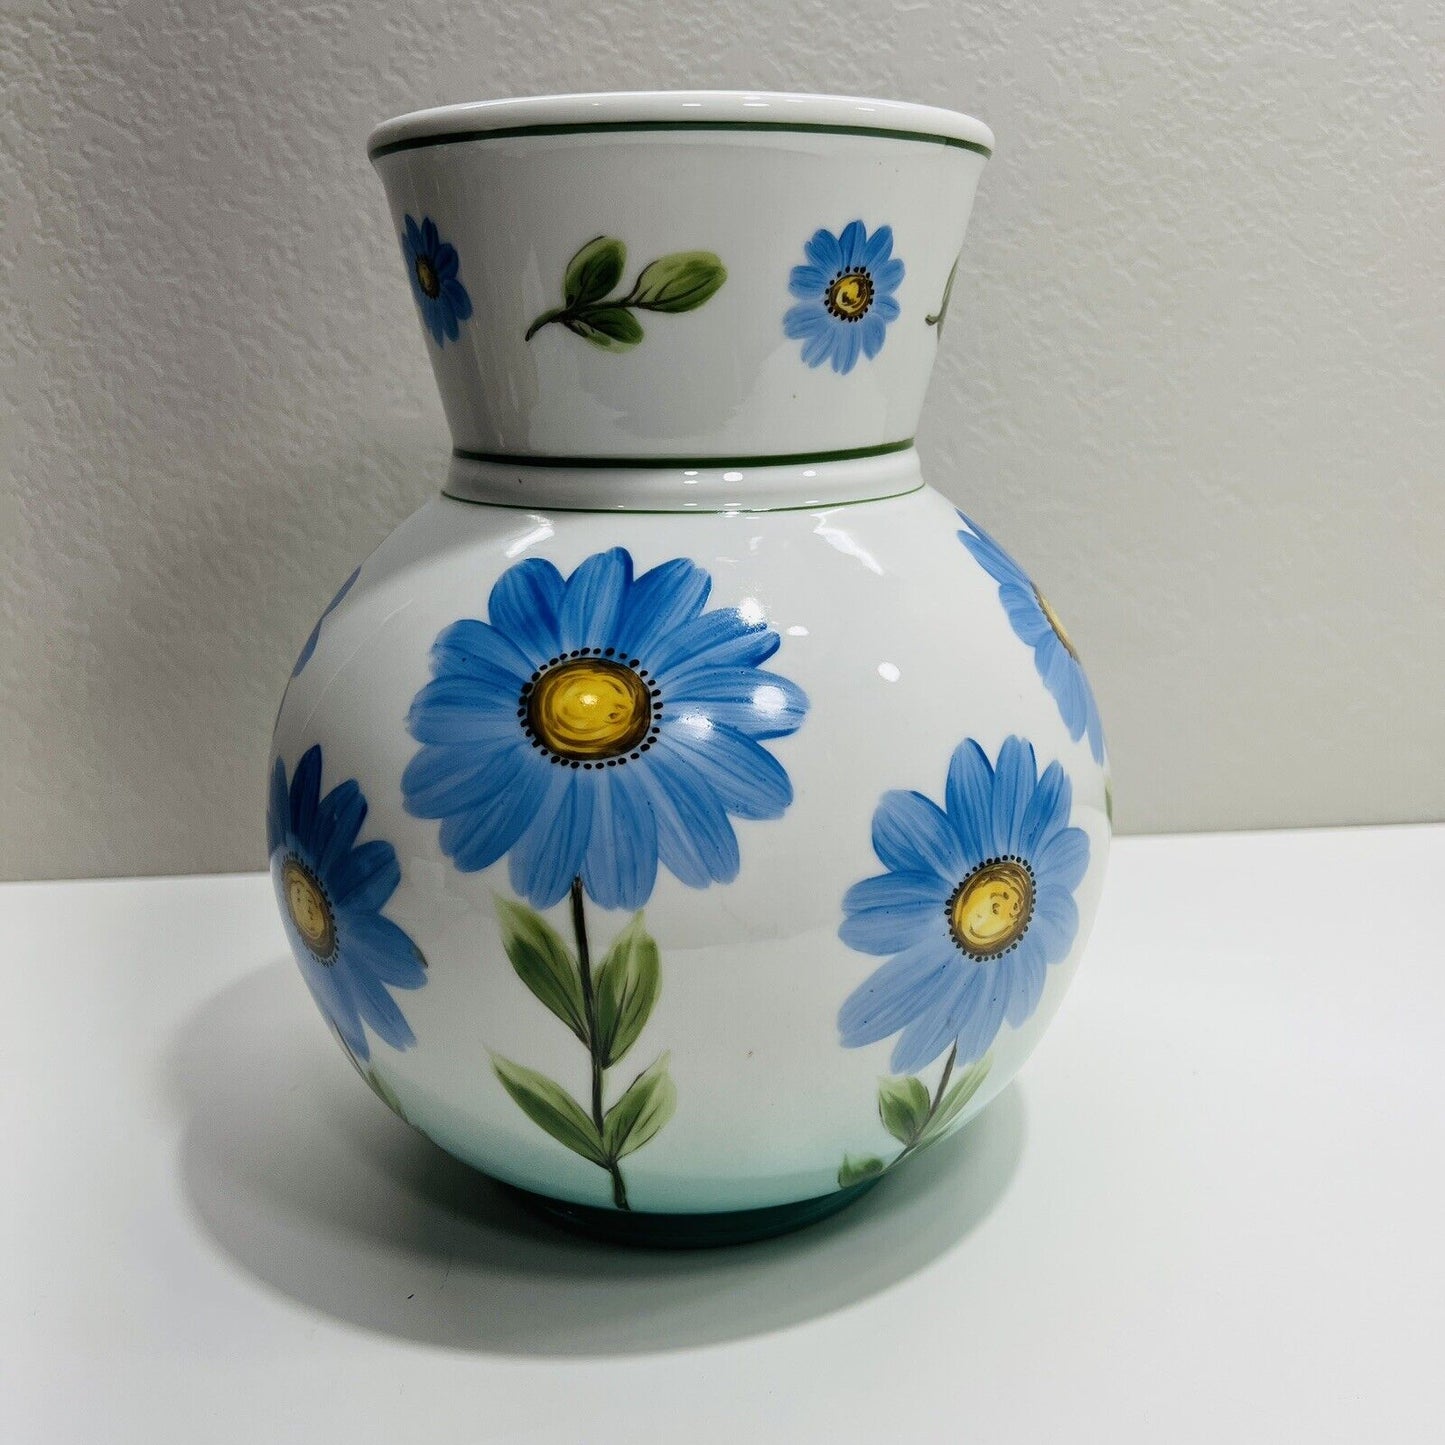 Bauscher Waiden Vase Germany Blue Floral Porcelain Vase Vintage Large